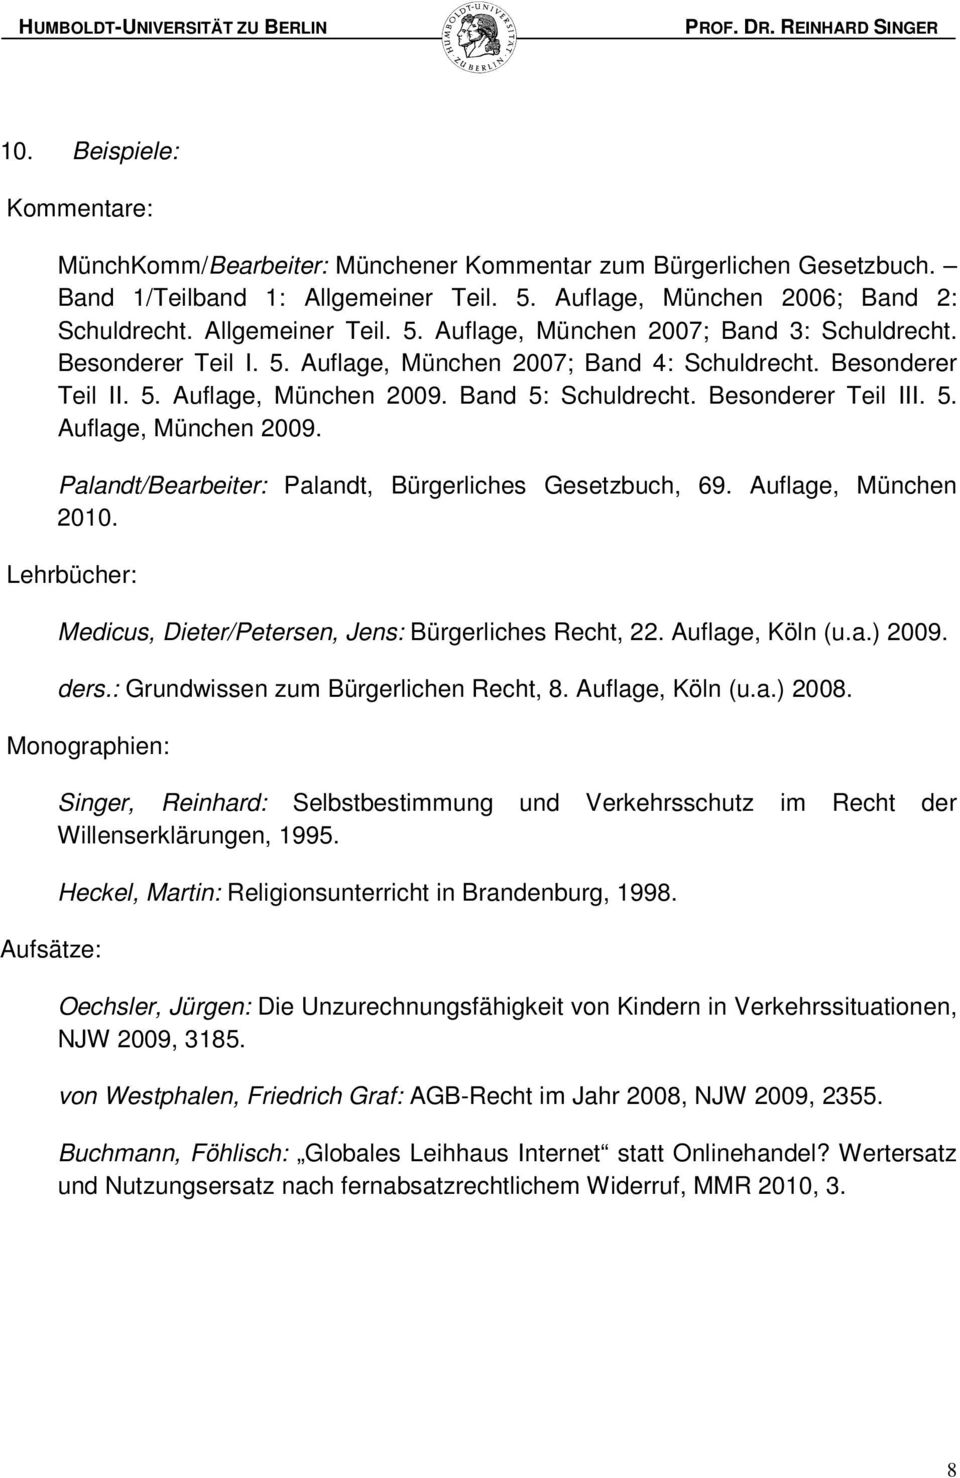 Auflage, München 2010. Lehrbücher: Medicus, Dieter/Petersen, Jens: Bürgerliches Recht, 22. Auflage, Köln (u.a.) 2009. ders.: Grundwissen zum Bürgerlichen Recht, 8. Auflage, Köln (u.a.) 2008.